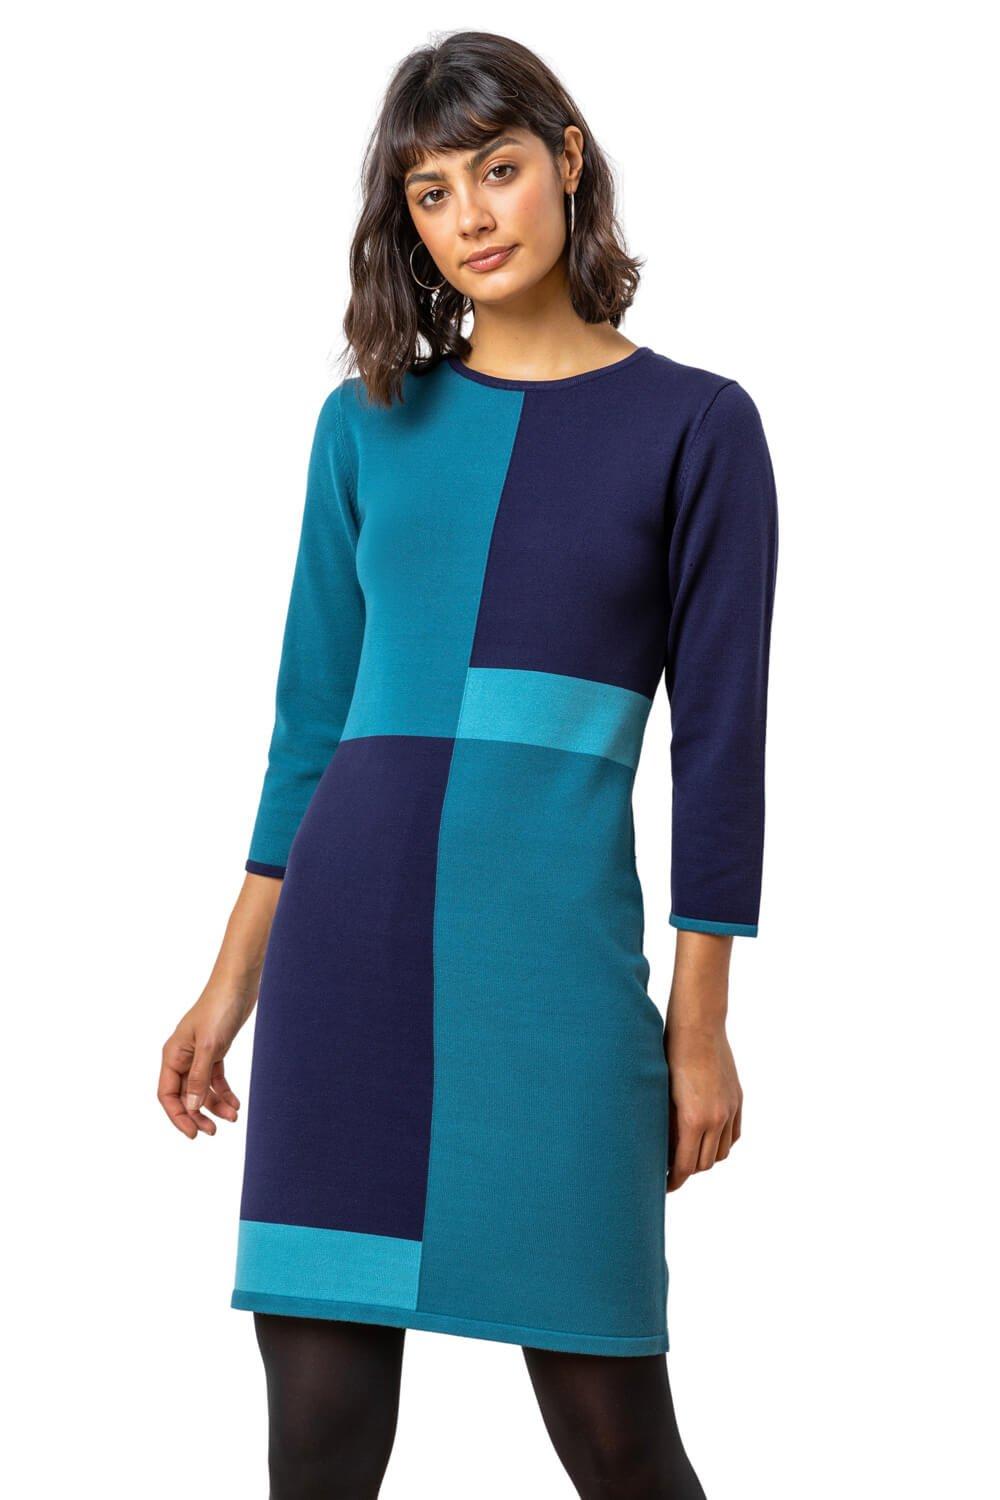 Трикотажное платье с цветовыми блоками Roman, синий платье панинтер для офиса 46 размер